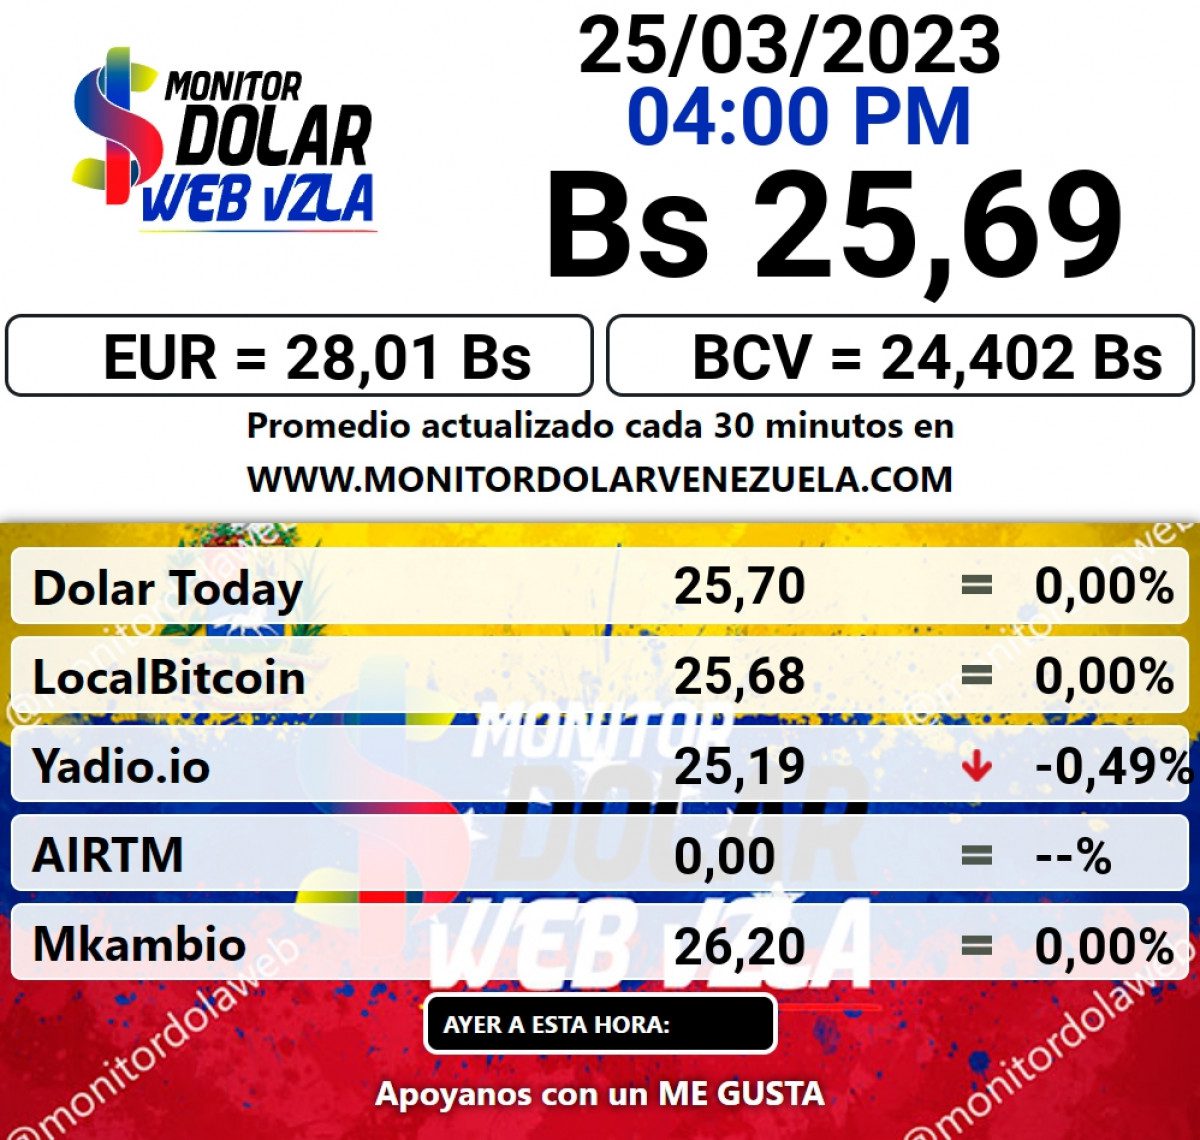 dolartoday en venezuela precio del dolar este sabado 25 de marzo de 2023 laverdaddemonagas.com monitor223